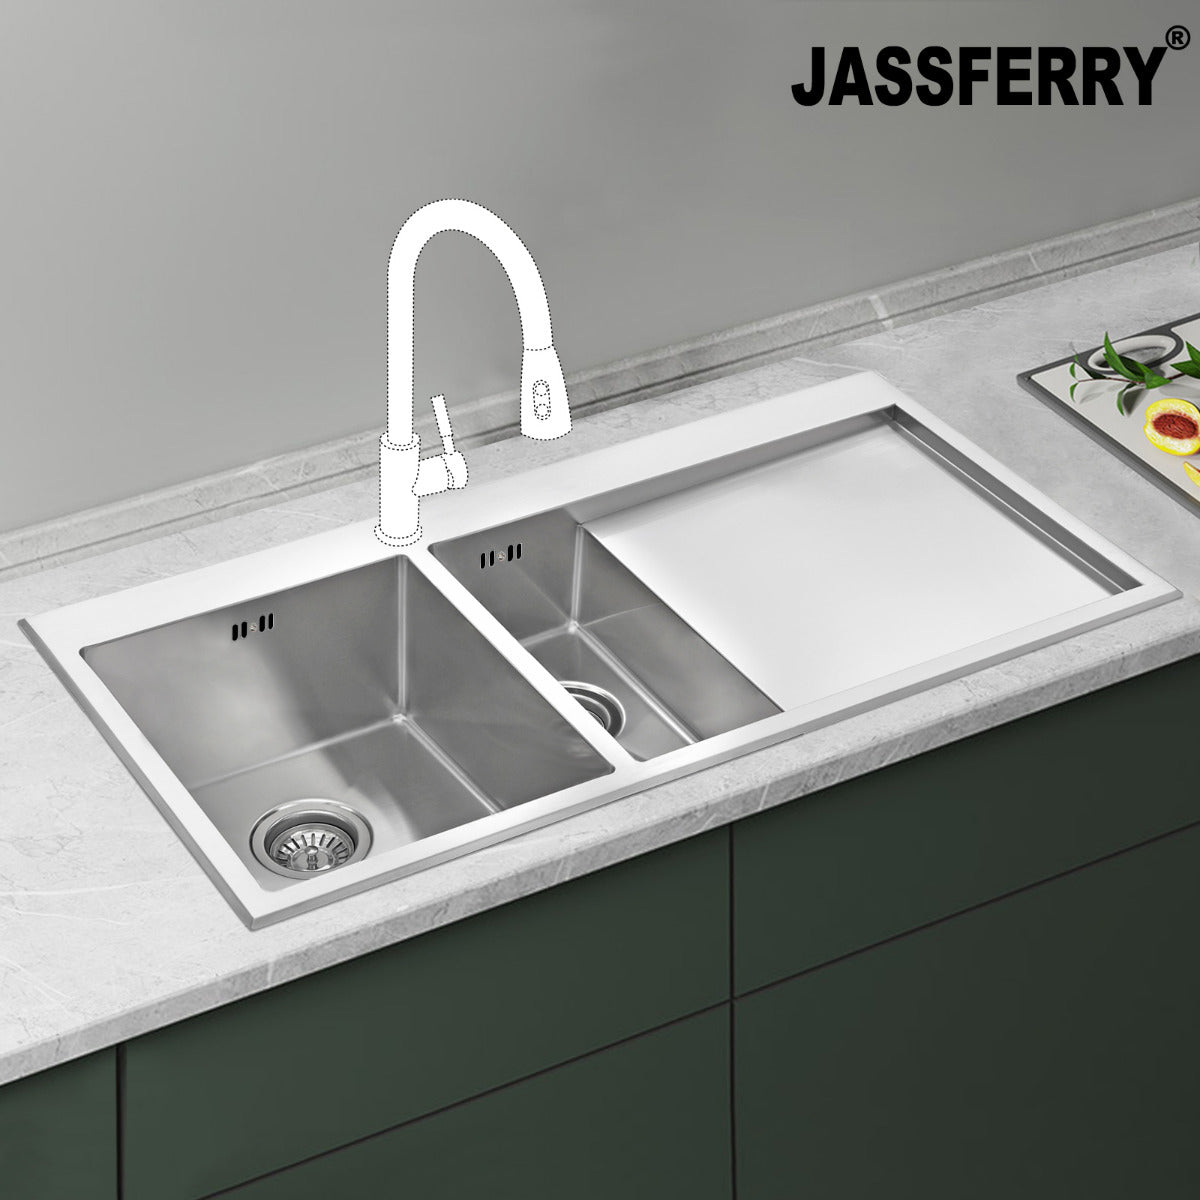 JassferryJASSFERRY Handcrafted Stainless Steel Kitchen Sink One Half Bowl Righthand DrainerKitchen Sink